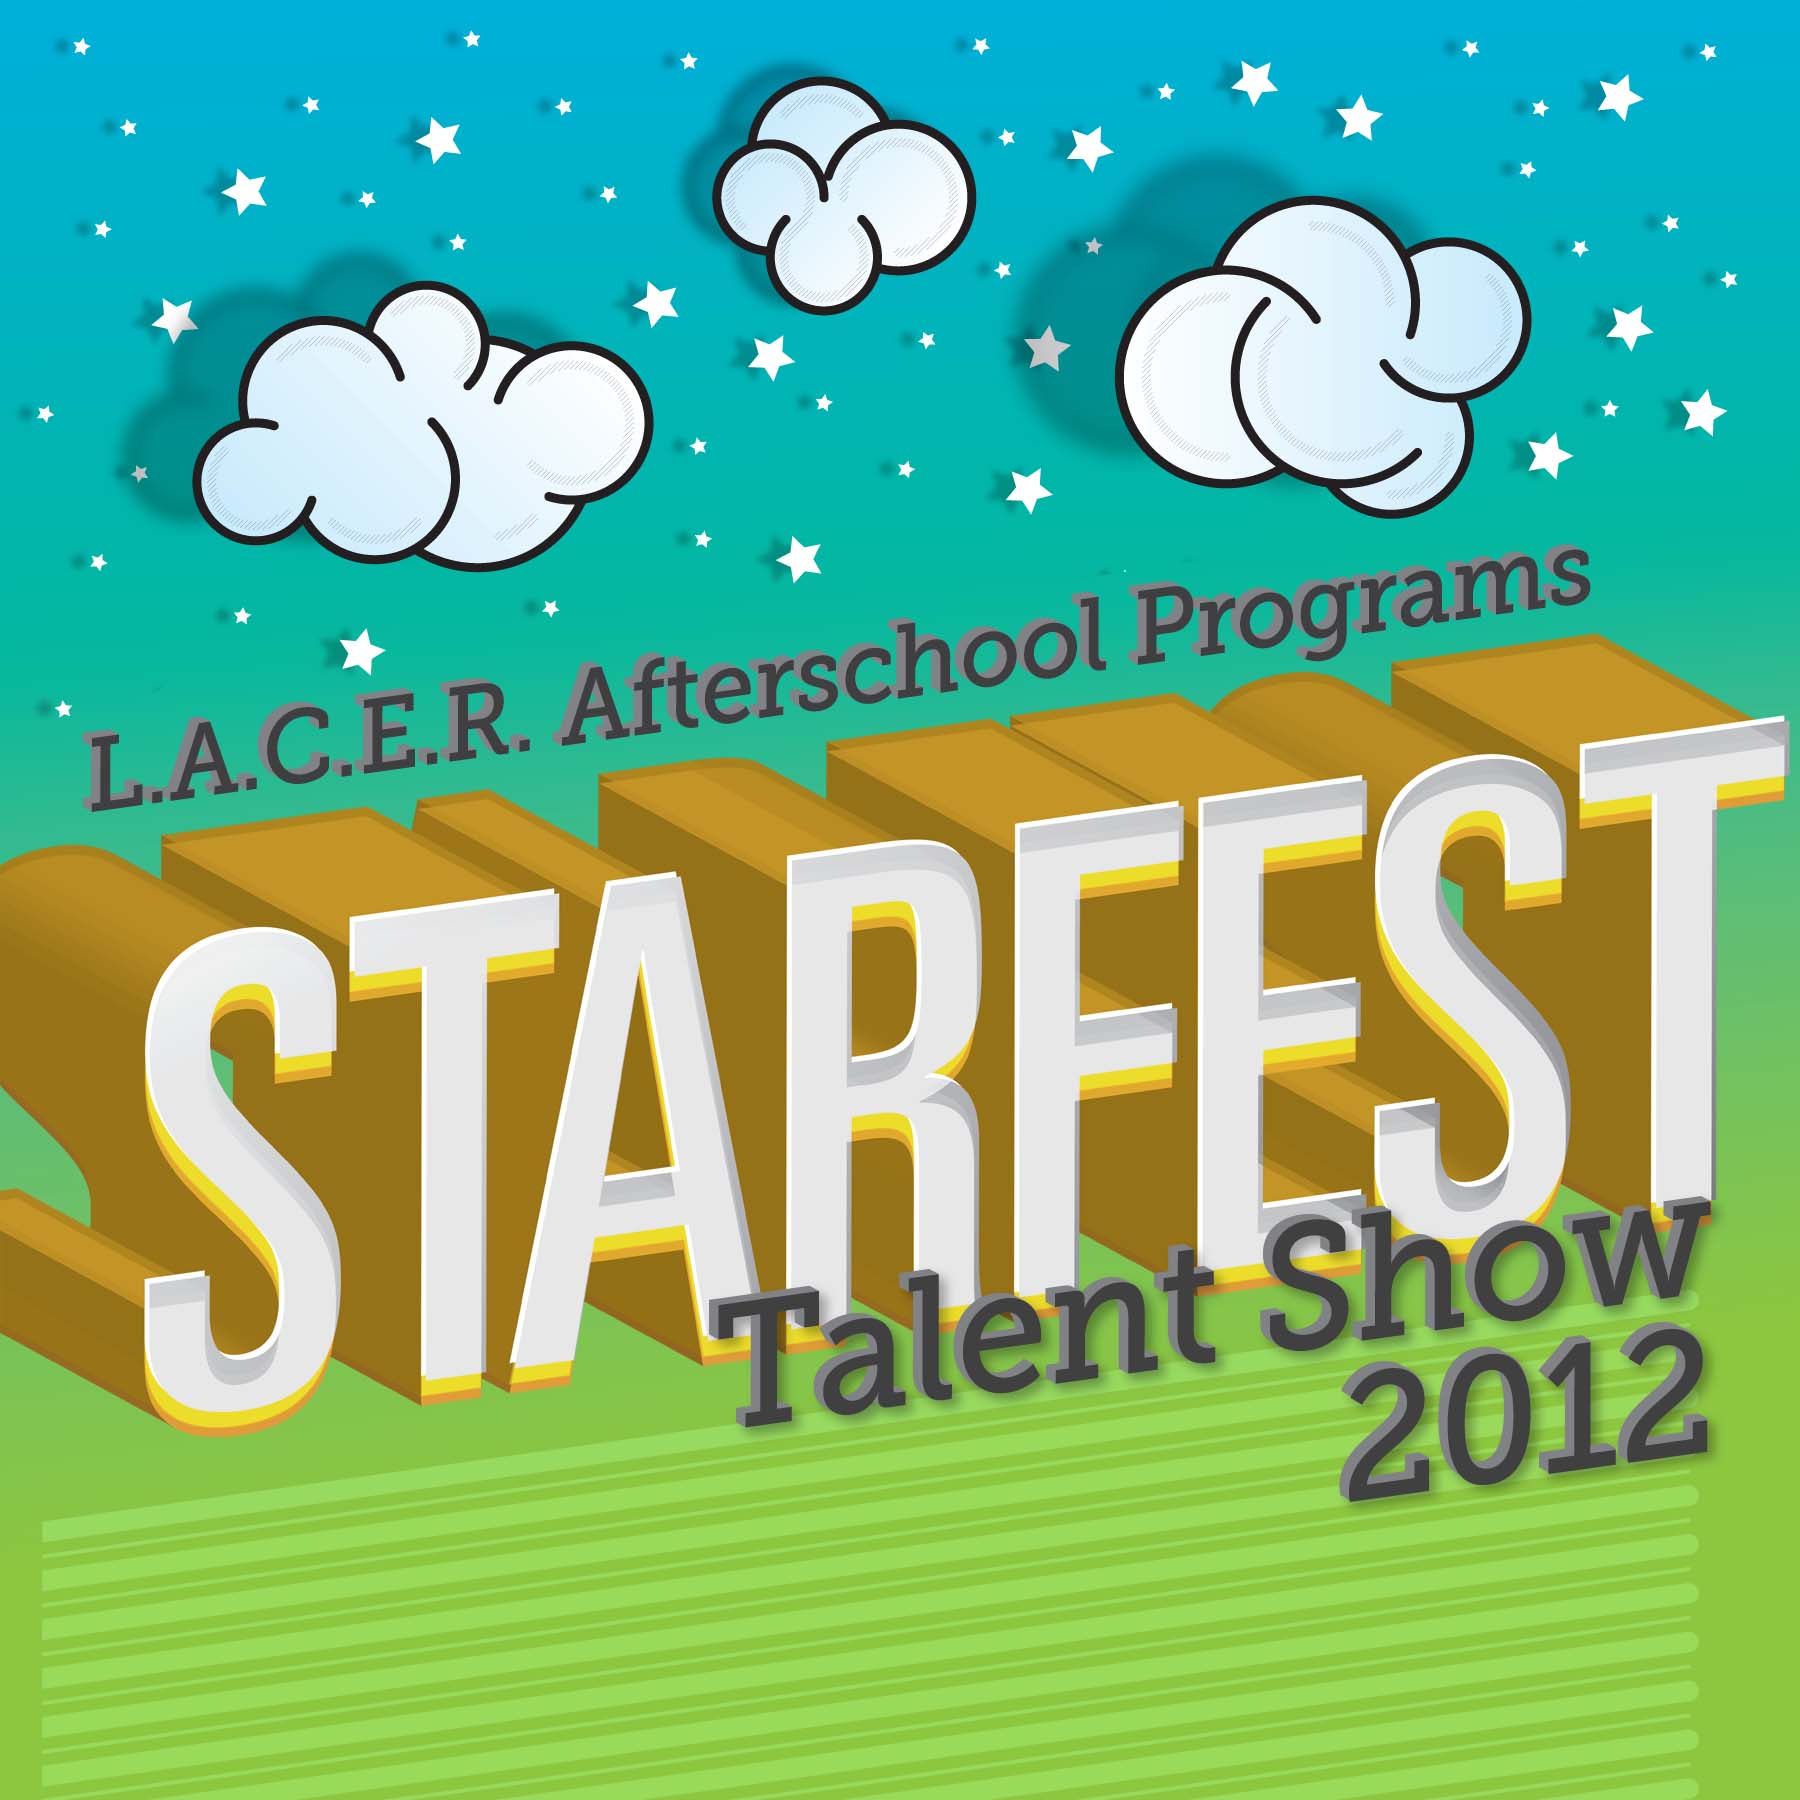 L.A.C.E.R. Starfest Profile Picture